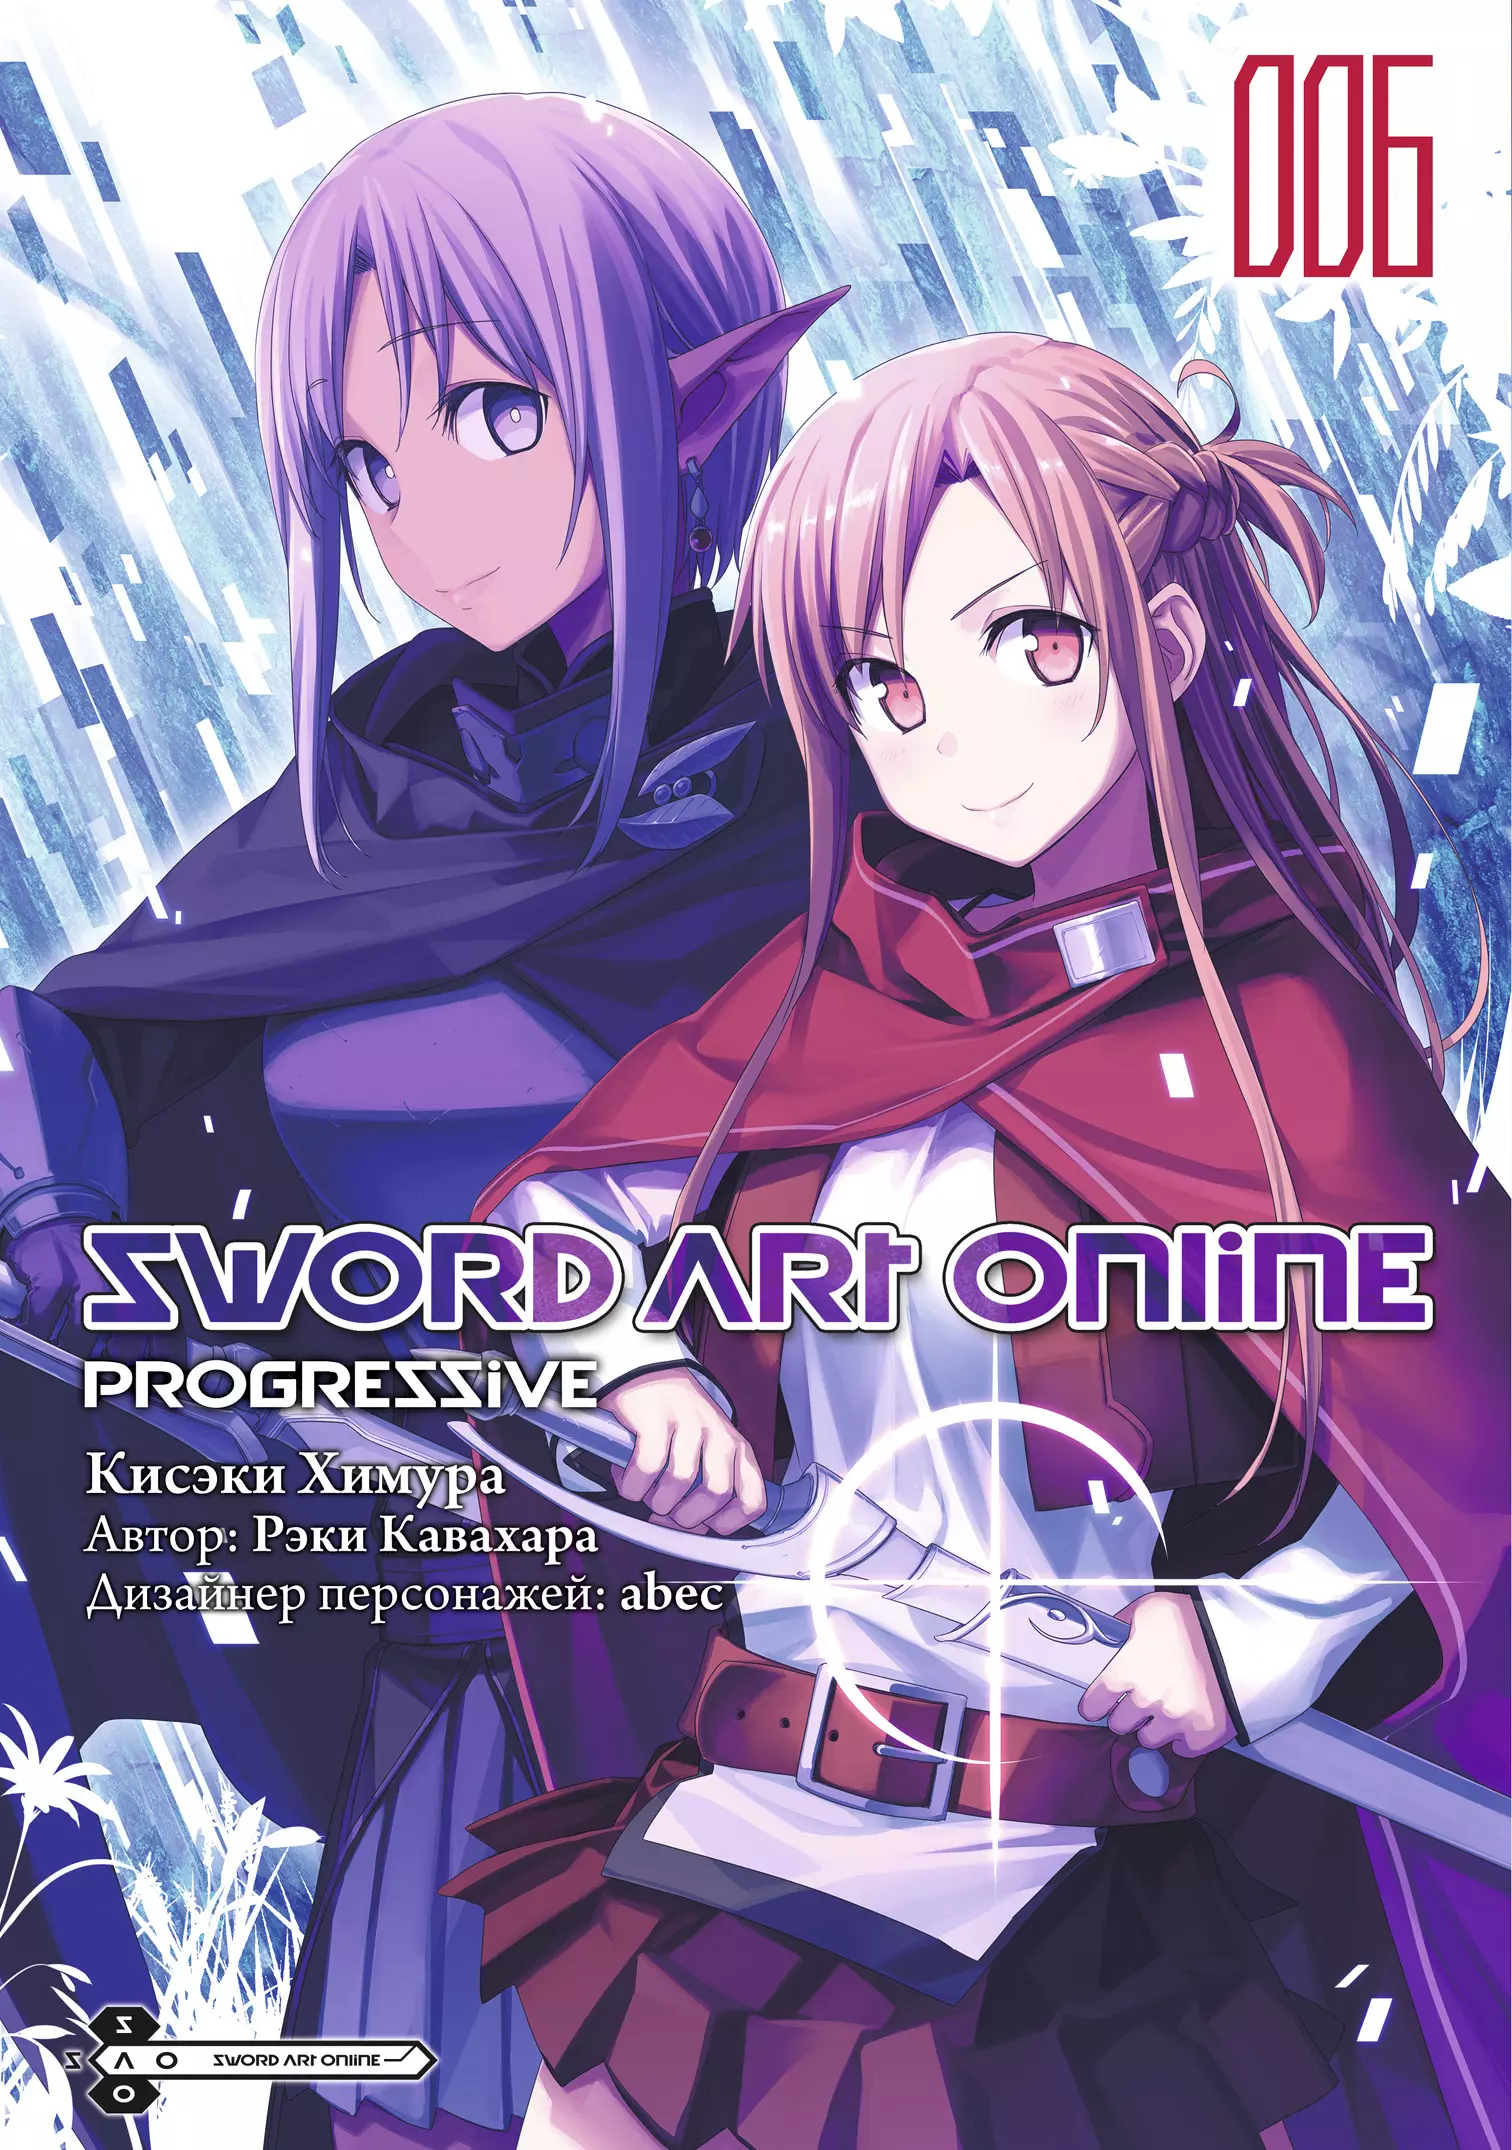 Кавахара Рэки Sword Art Online: Progressive. Том 6 кавахара рэки химура кисэки sword art online progressive том 3